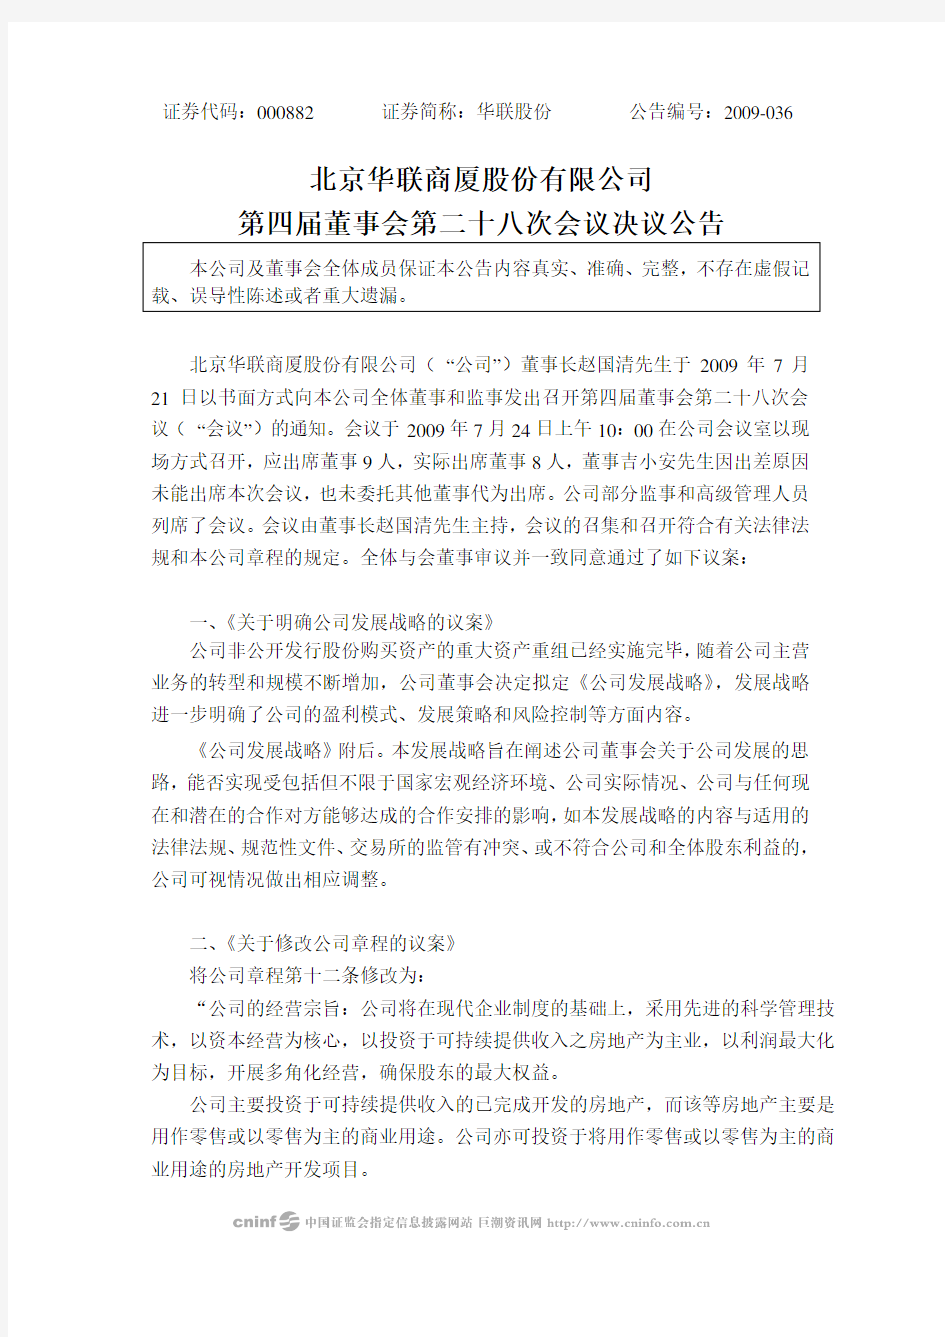 北京华联商厦股份有限公司第四届董事会第二十八次会议决议公告